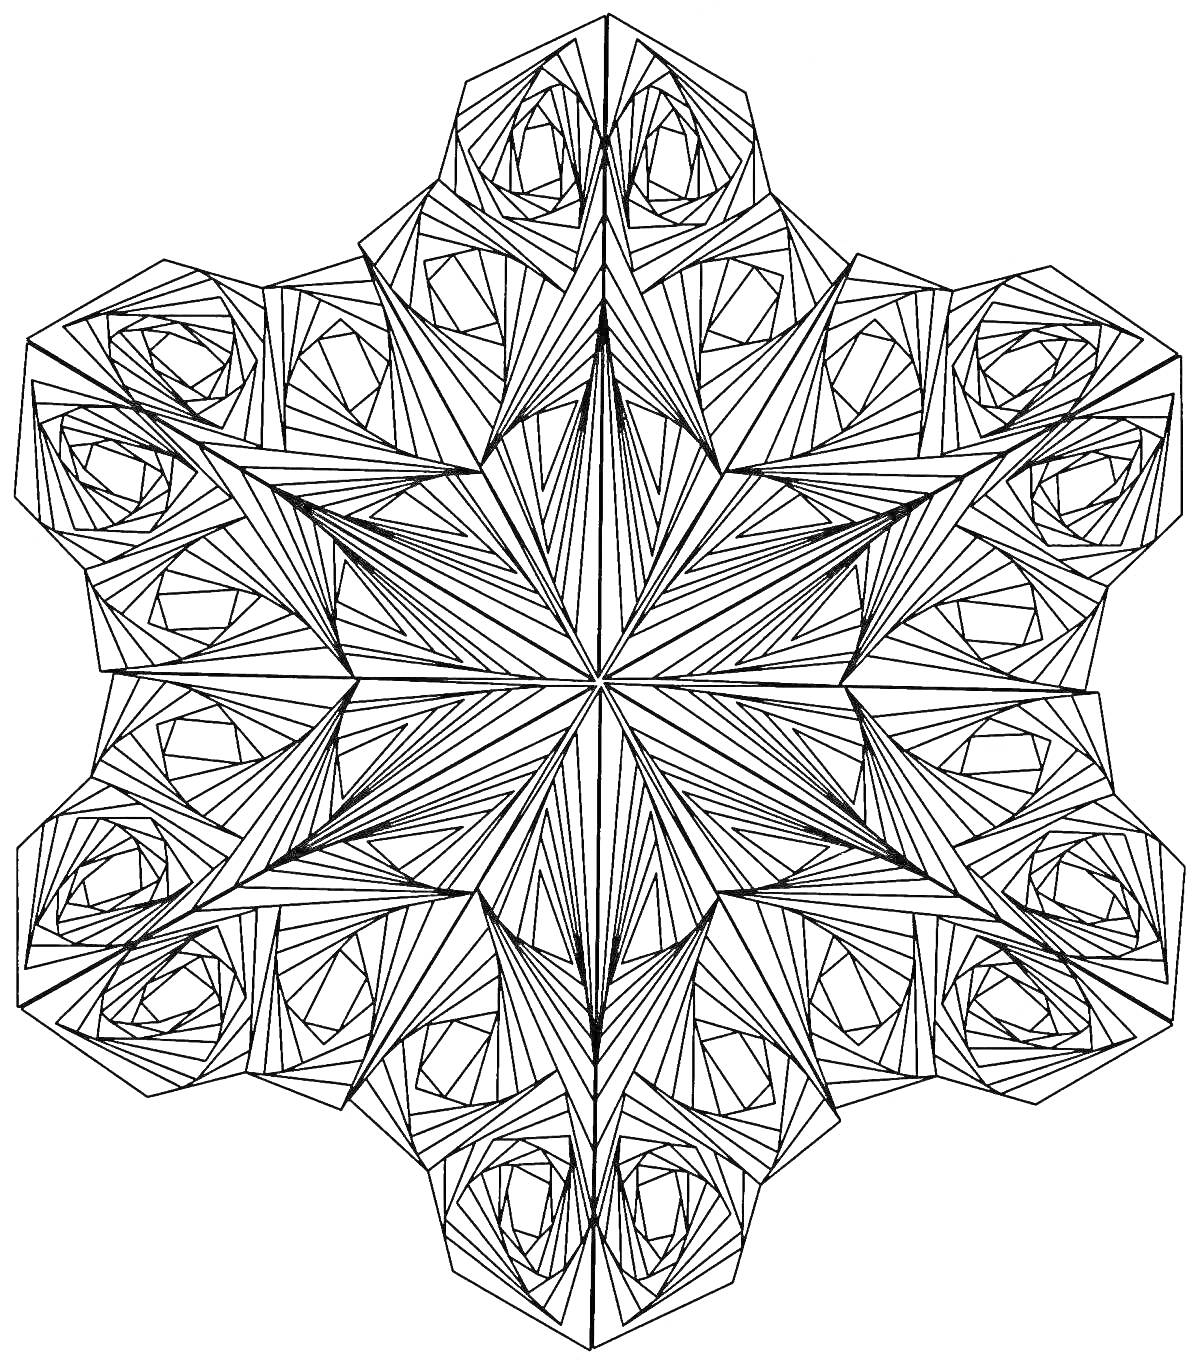 Раскраска Мандала с восьмиконечной звездой и спиральными узорами